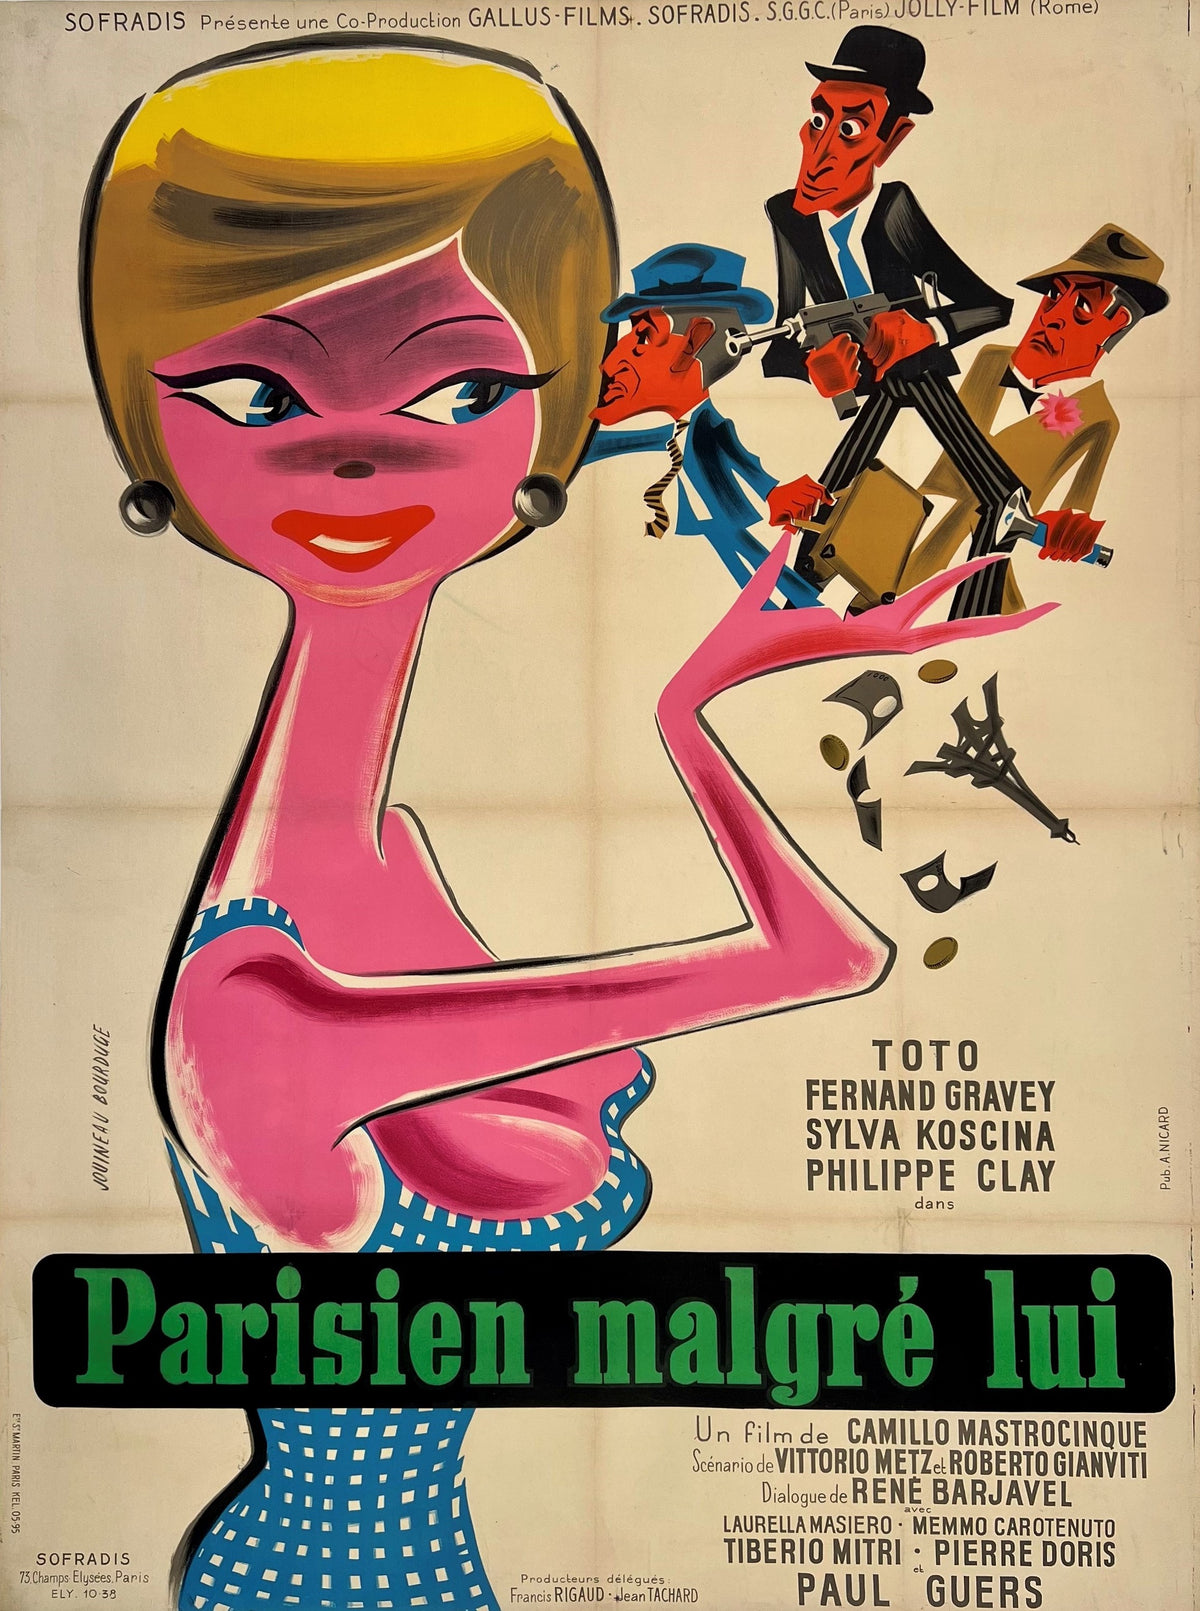 Parisian Malgre Lui - Authentic Vintage Poster